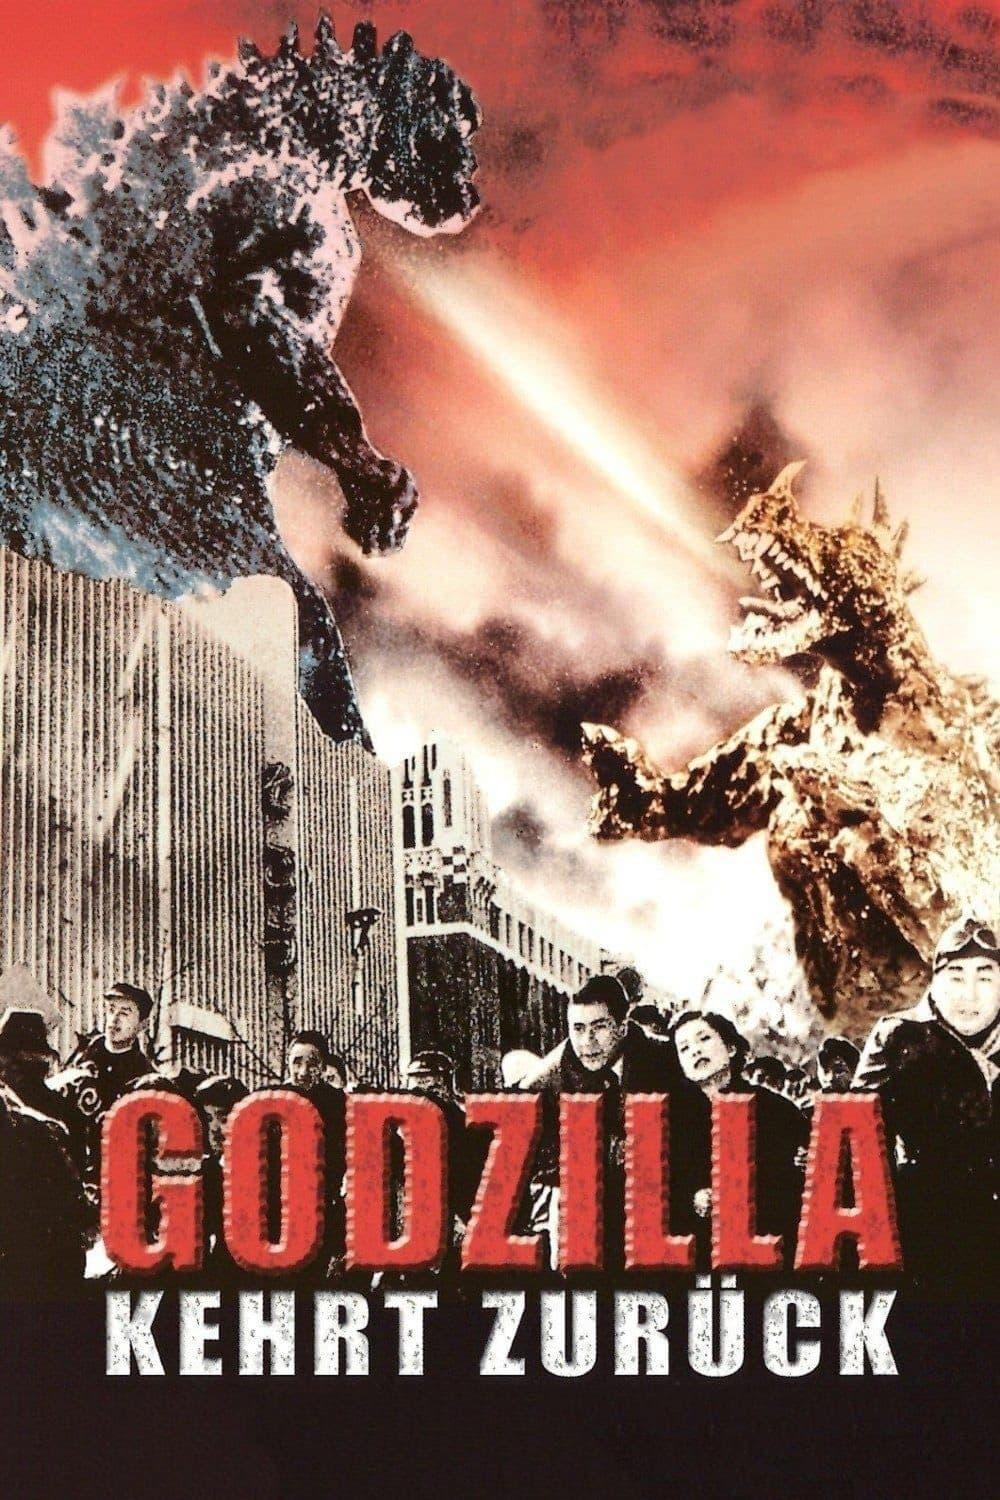 Godzilla kehrt zurück poster